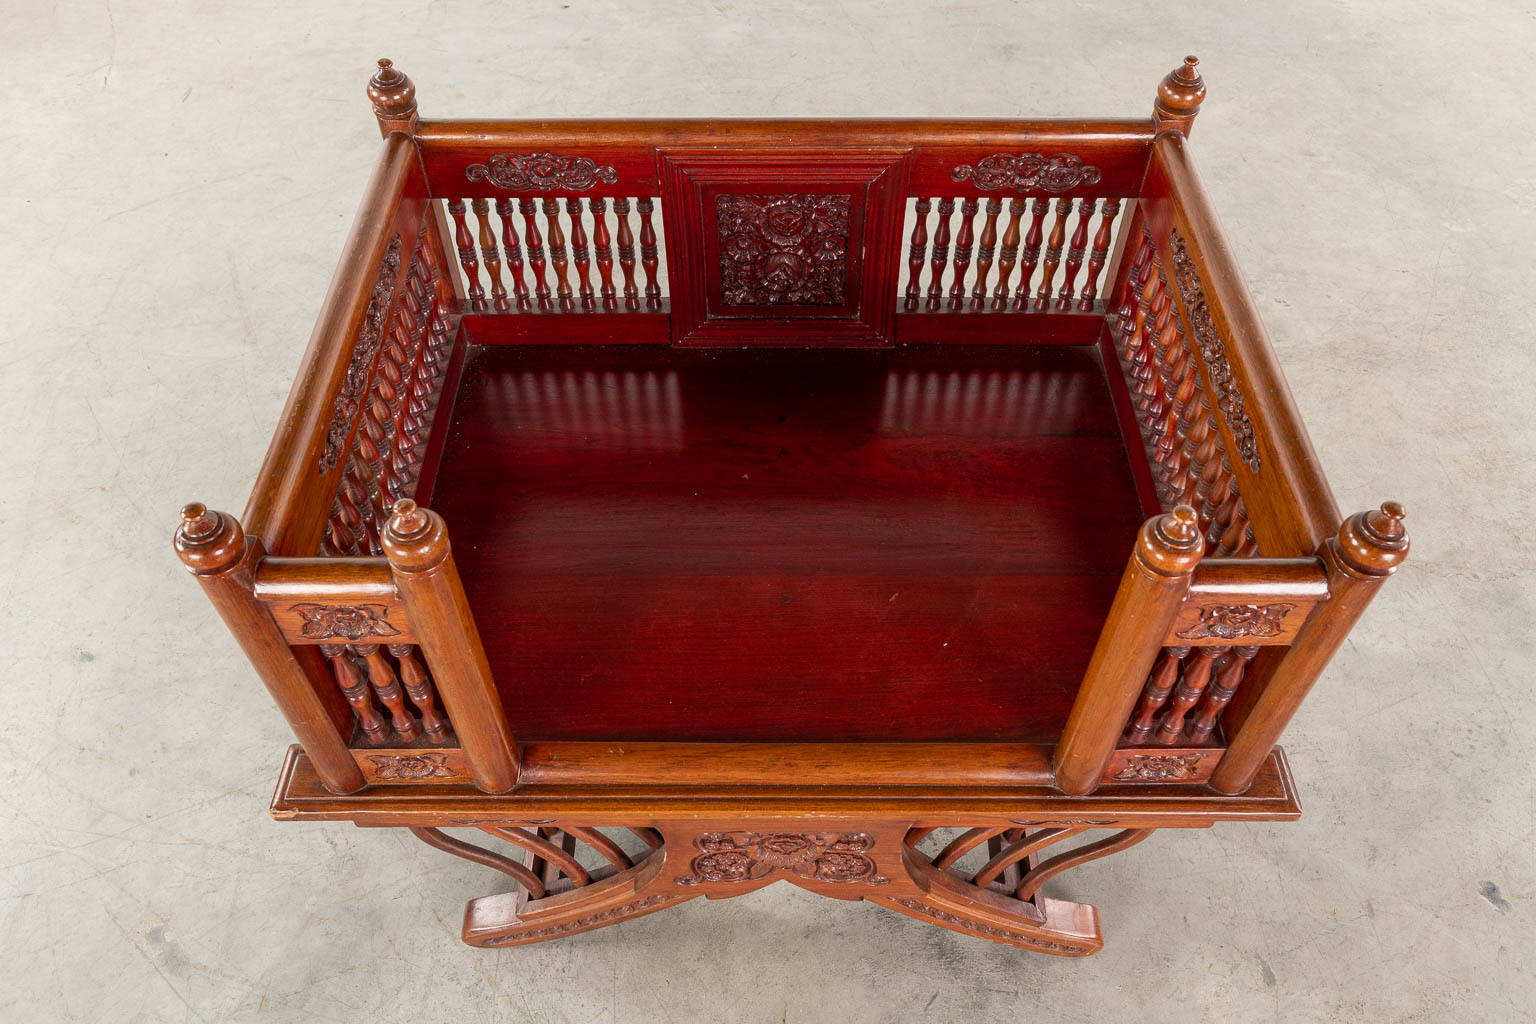 A pair of Oriental chairs, 20th C. (D:63 x W:89 x H:75 cm)